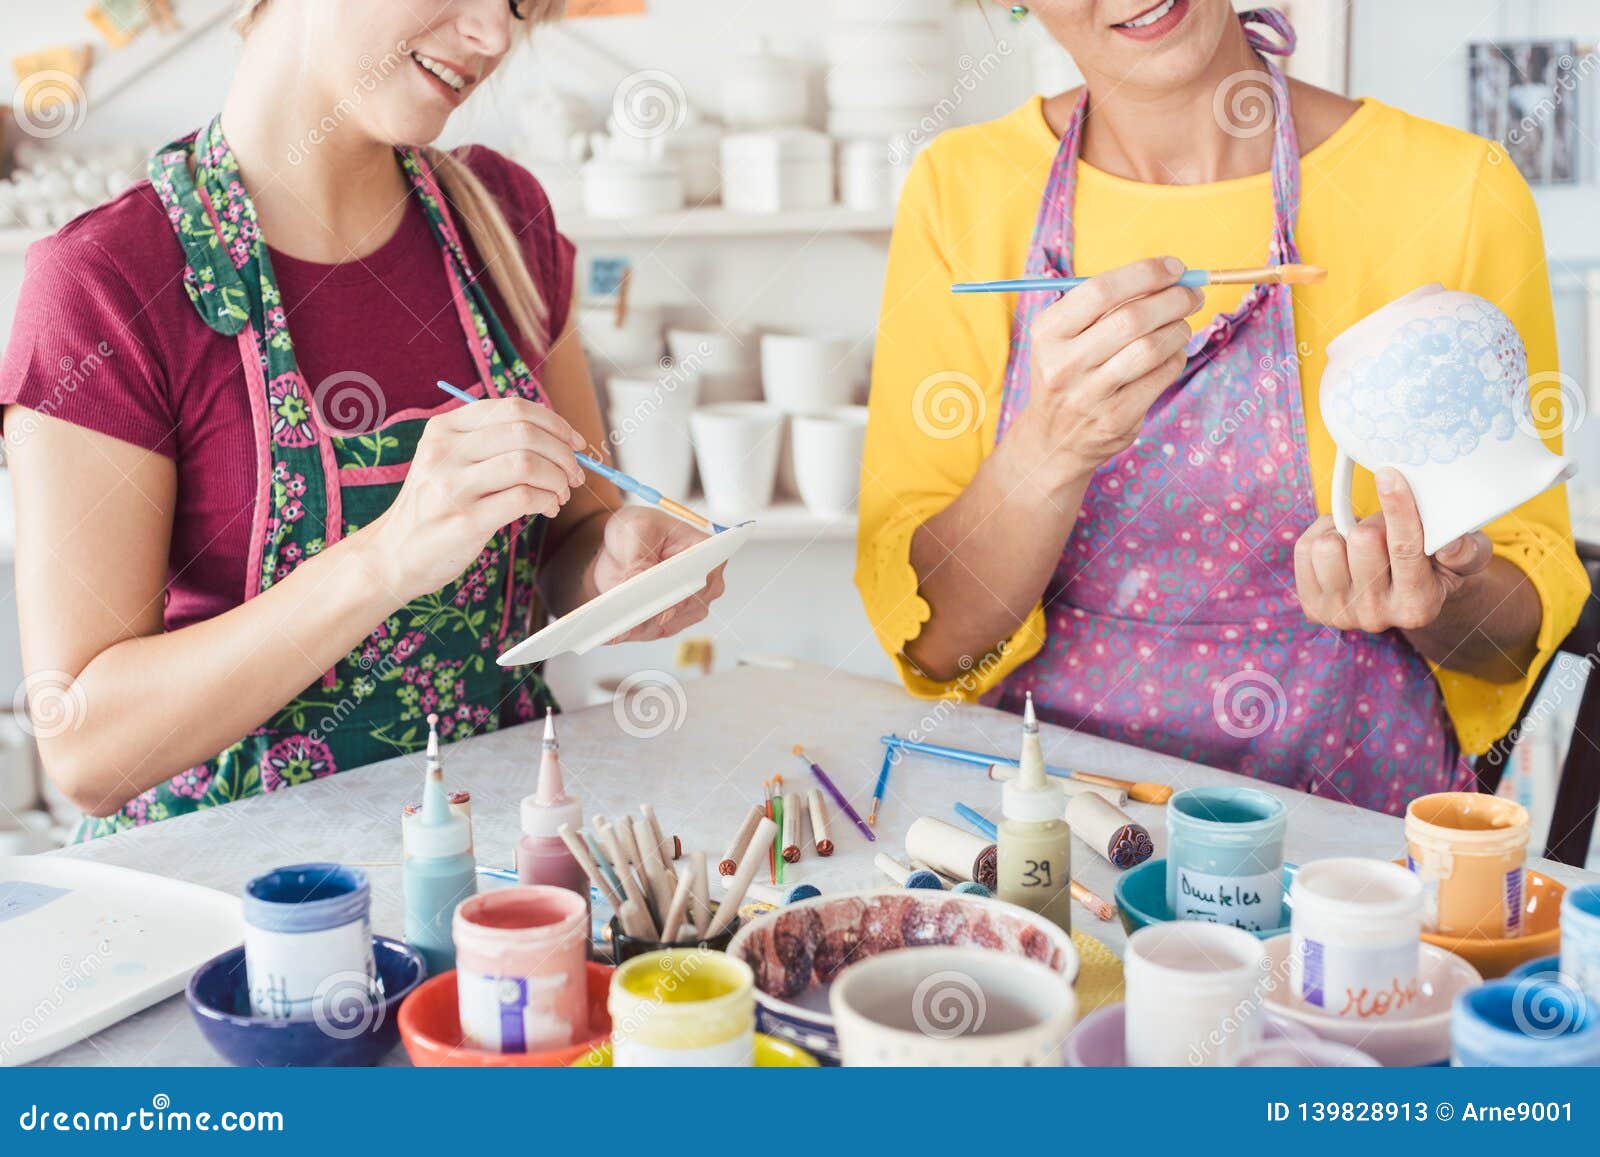 two women painting own ceramic tableware in diy workshop